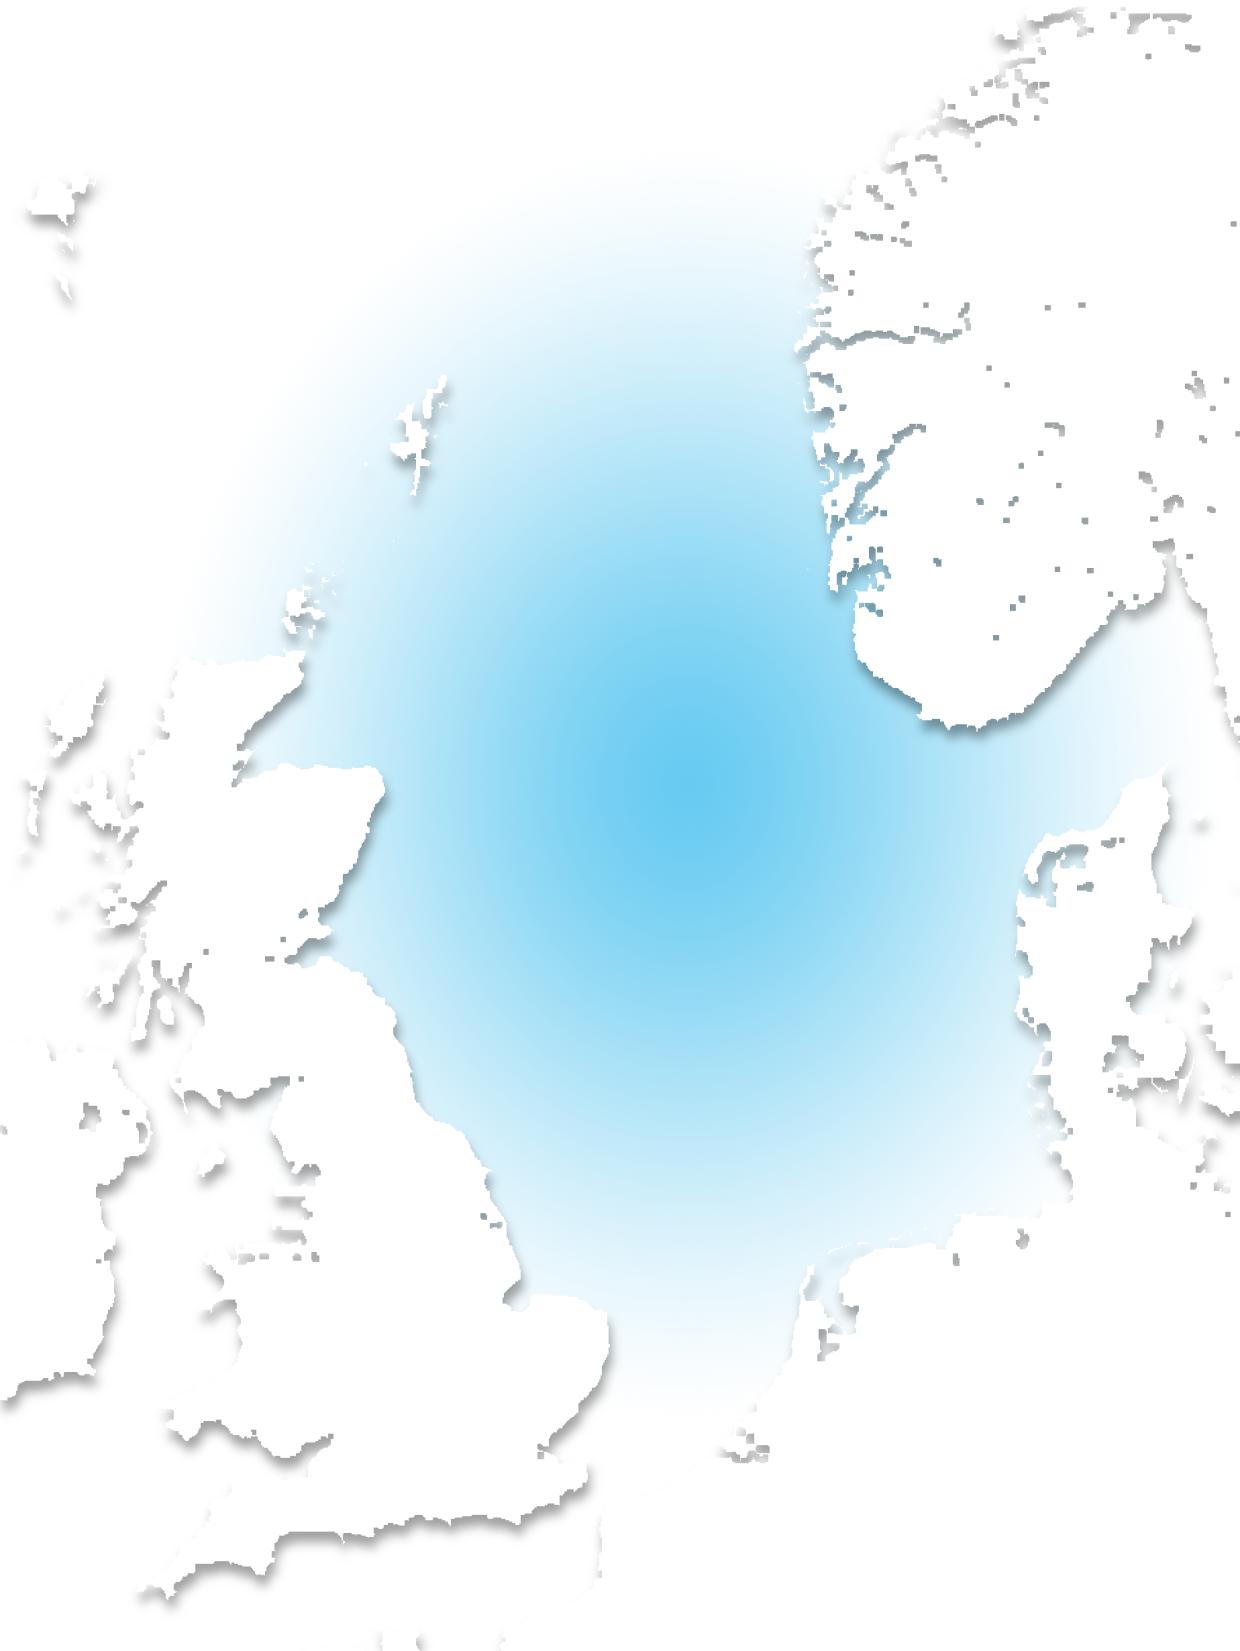 Stort, nytt marked Norge Nordsjøen = ett forretningsområde Enorm vekst: 5000-10.